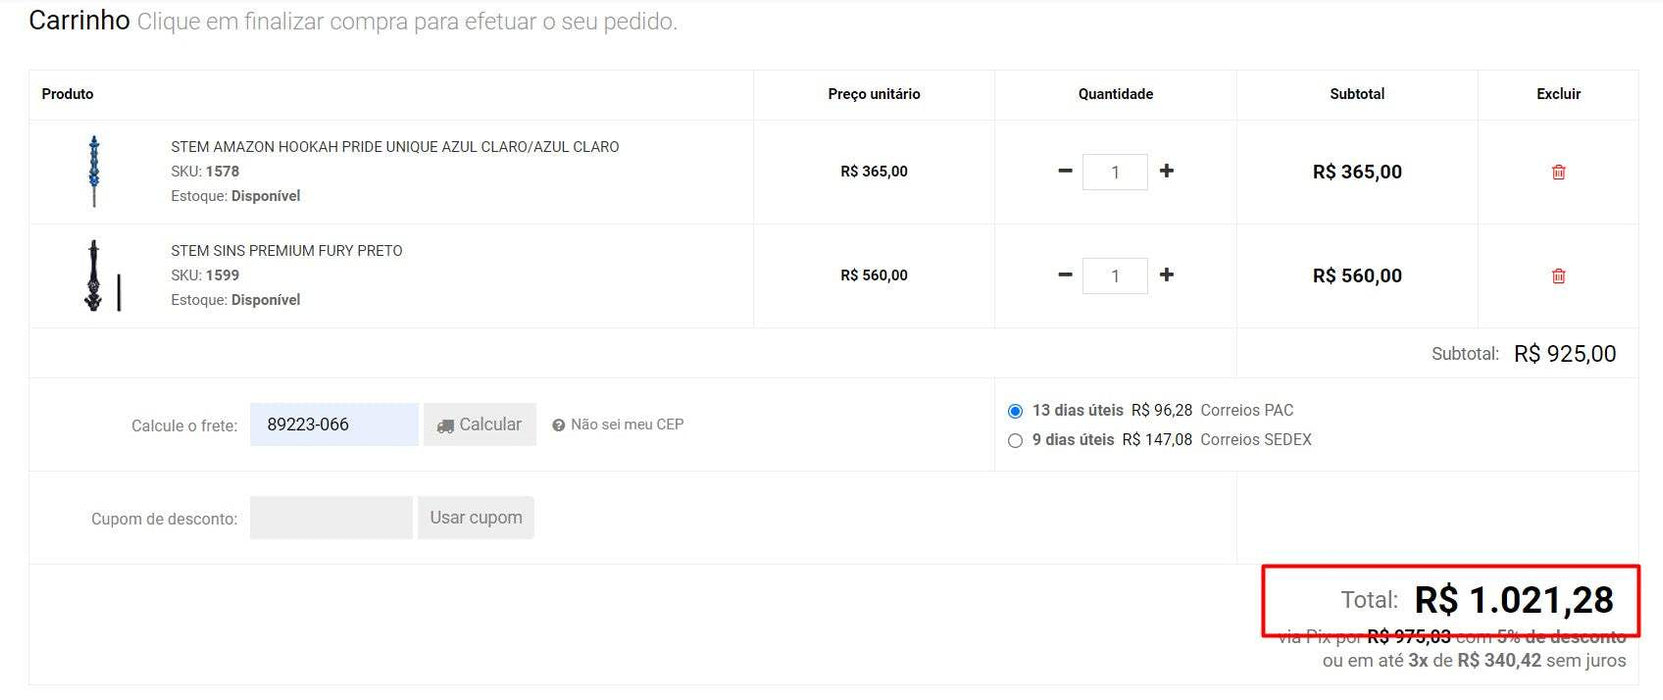 المتسوق الشخصي | شراء من البرازيل - مجموعة قطيفة - Turma Do Pica Pau Ty - 18 مجموعة (DDP)